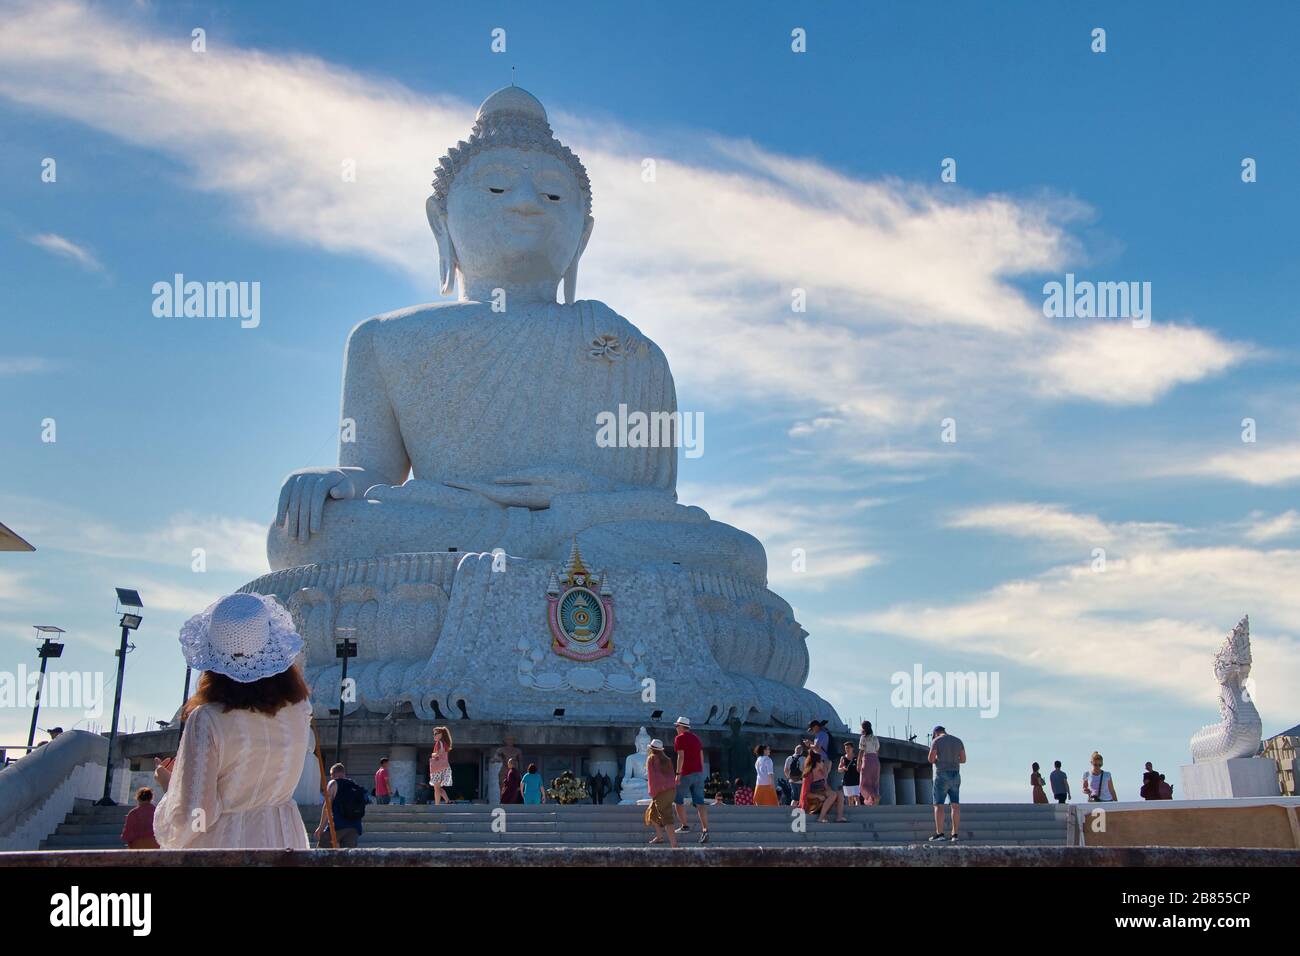 Grande Buddha monumento sull'isola di Phuket, Thailandia. Il Grande Buddha di Phuket è uno dei punti di riferimento più importanti e venerati dell'isola di Phuket. Foto Stock